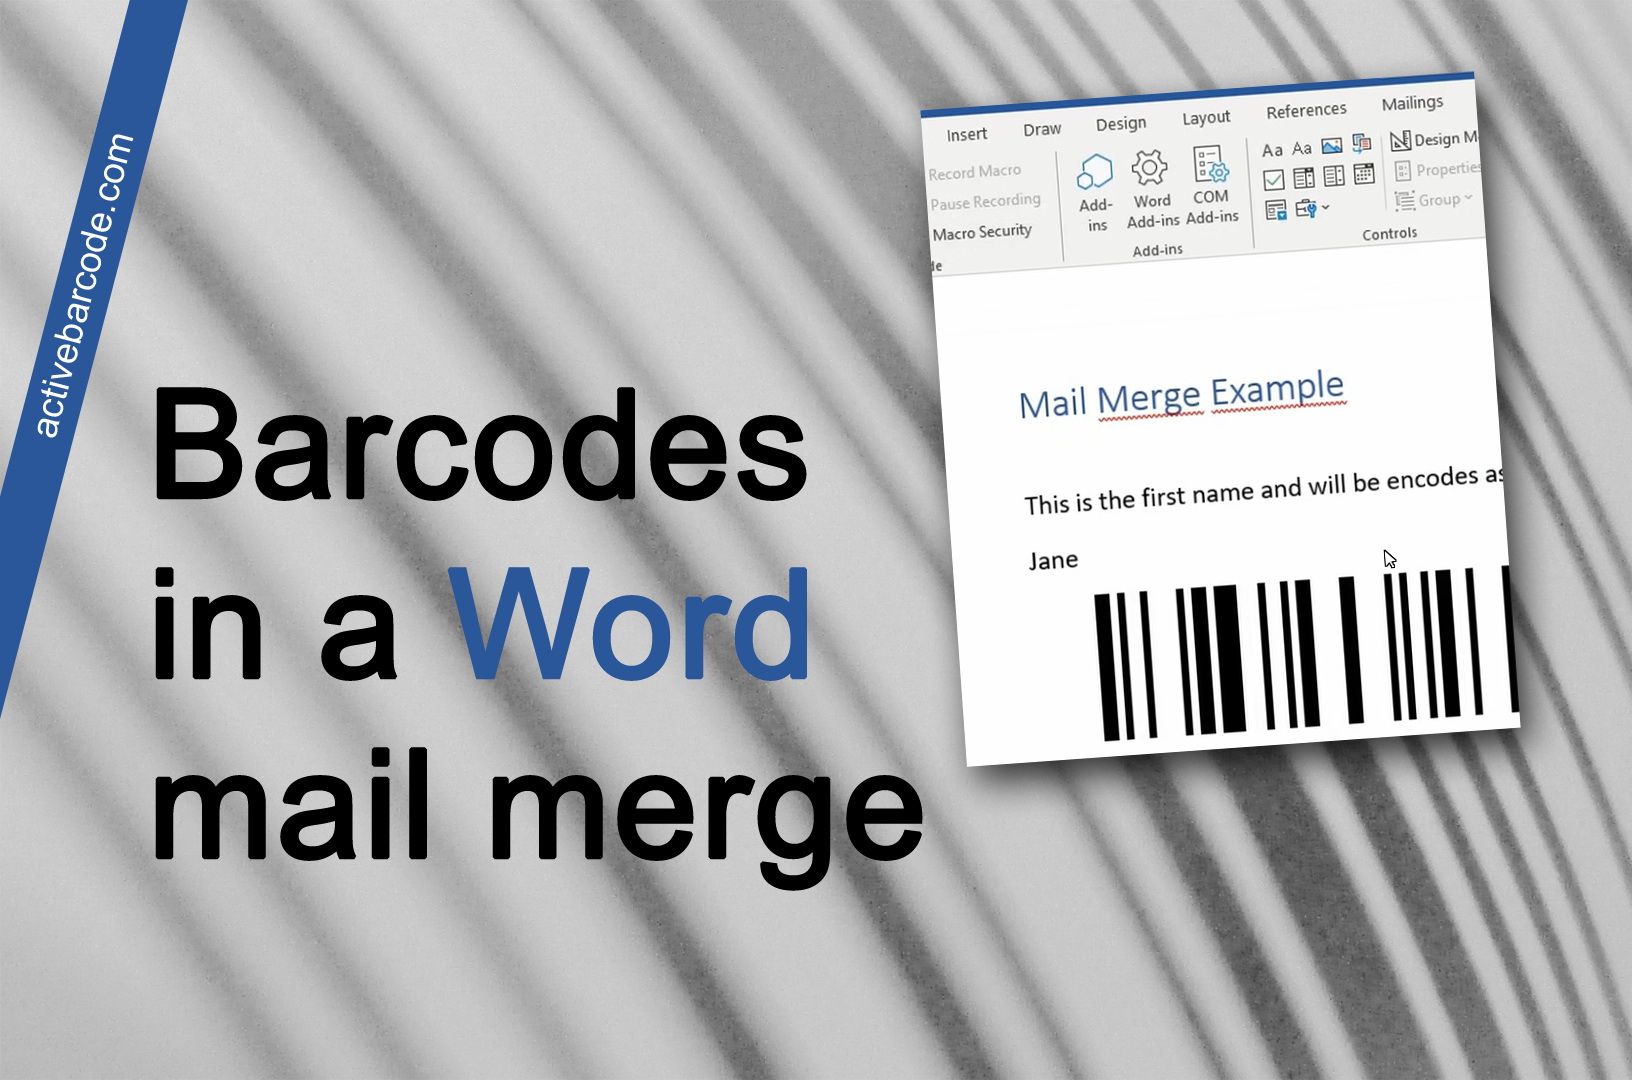 ActiveBarcode: Como adicionar um código de barras a um mail merge existente.